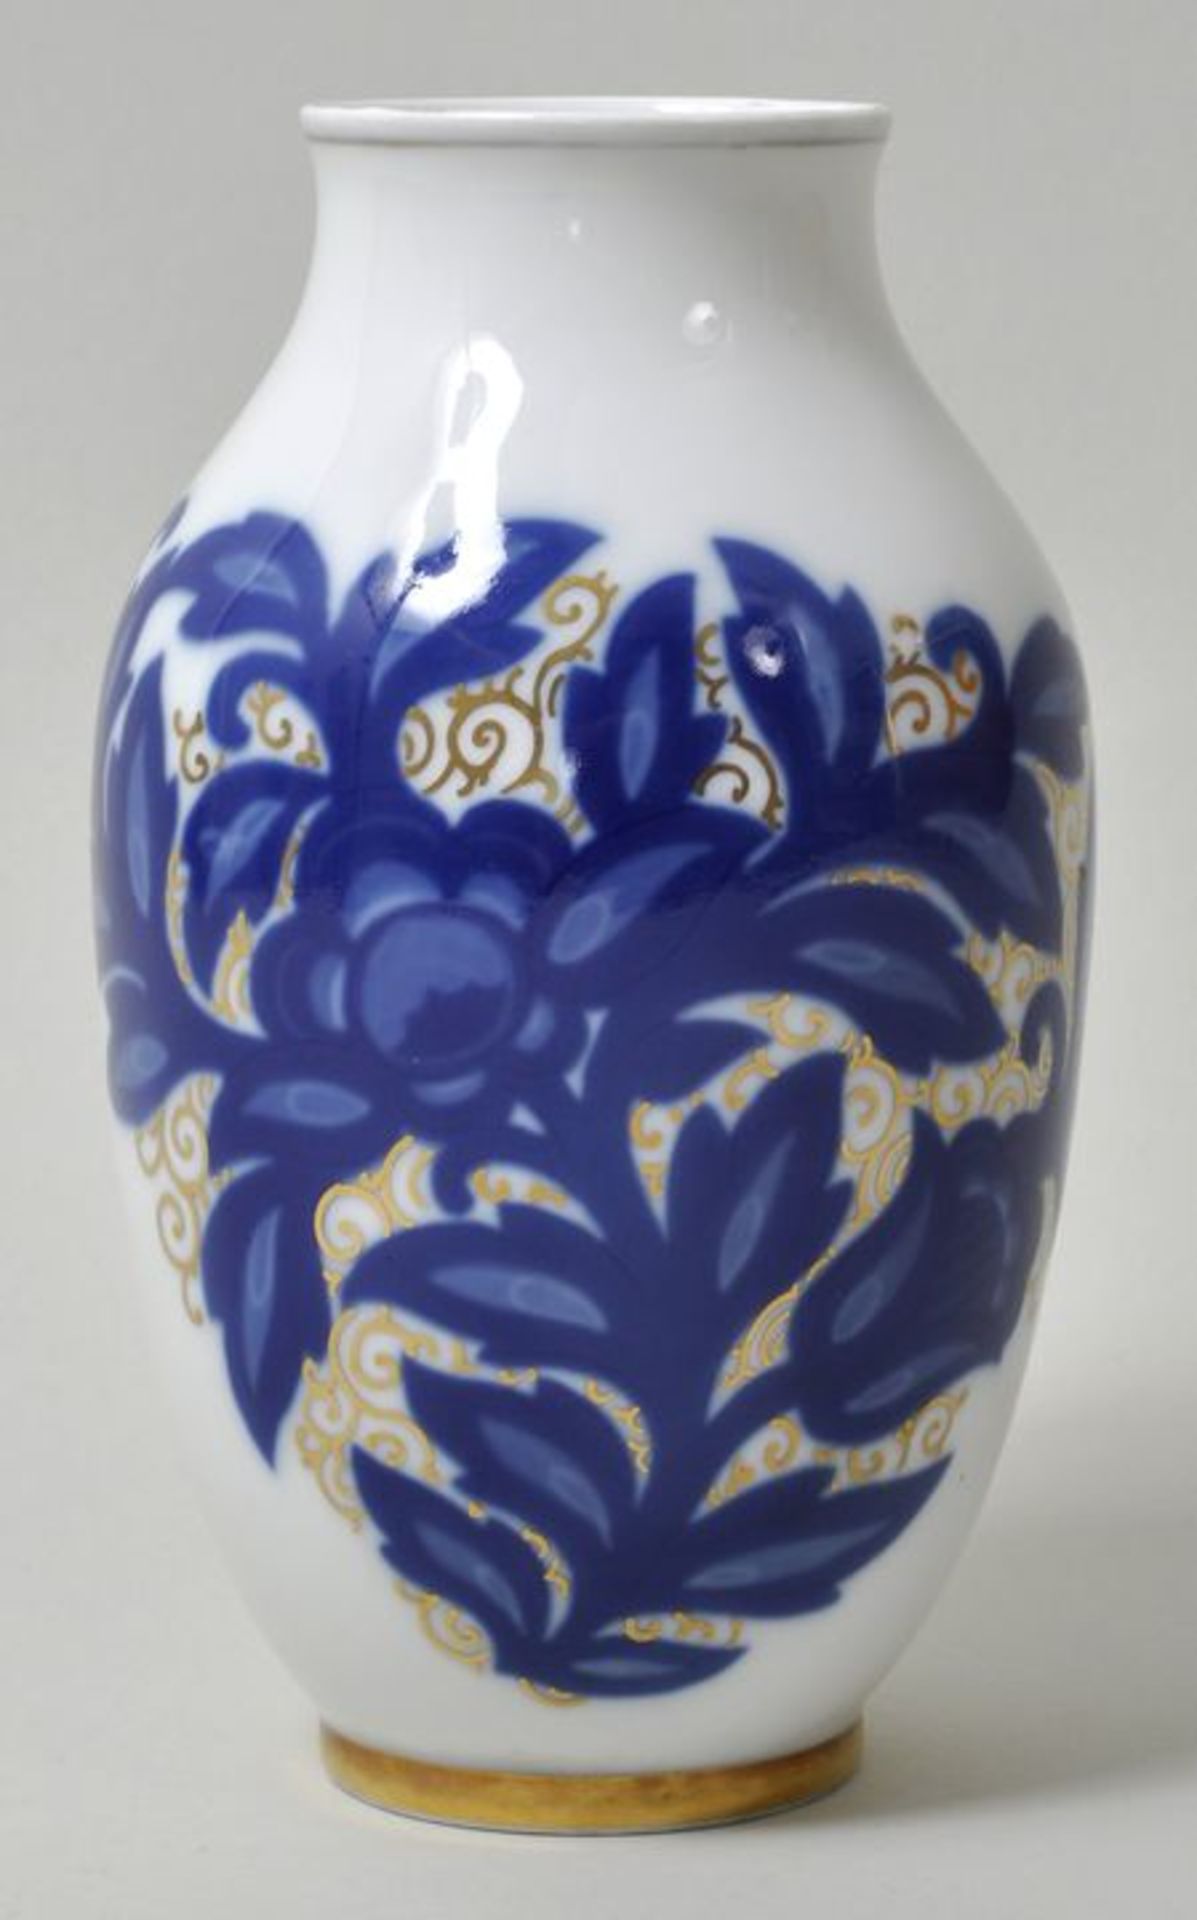 Vase mit Rosari-Dekor, Selb, Rosenthal, ca. 1920.Porzellan, Dekor aus blauen Blumenranken und